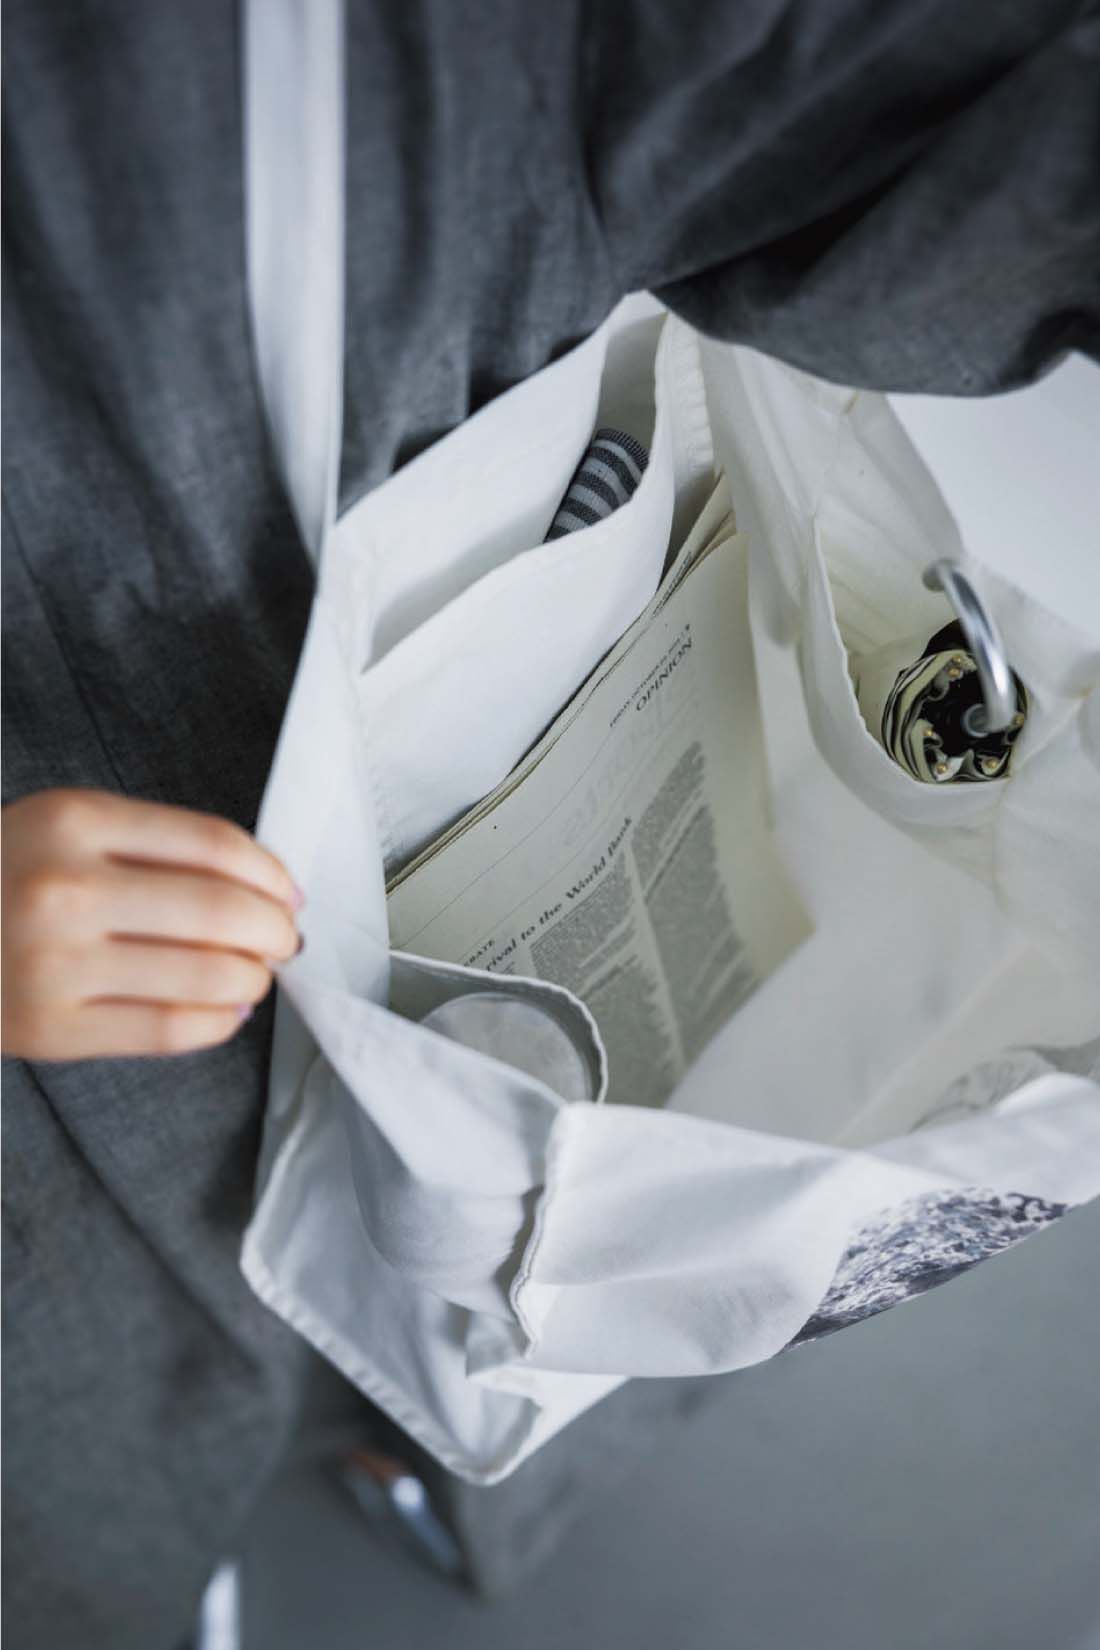 シロップ．|シロップ.×ミュージアム部　フランスの印象派画家モネの肖像 プリントトート|折りたたみ傘、水筒、お財布や携帯などに便利な内ポケットが3つ。取り外せる底板付きで安定よく。